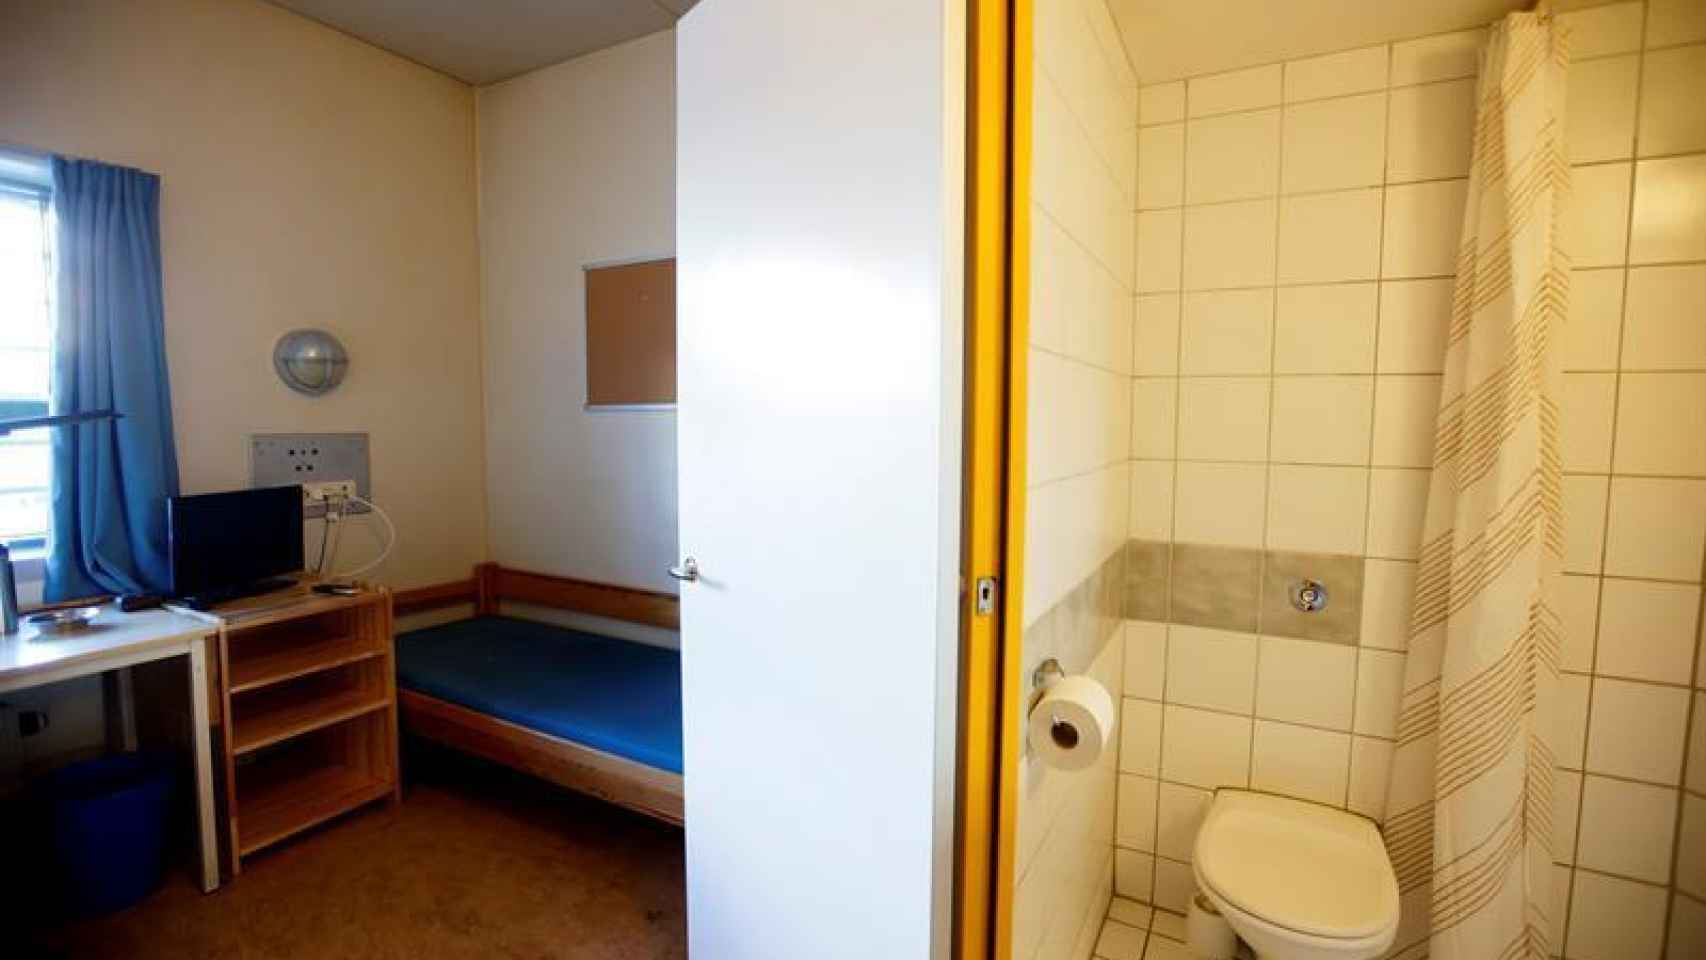 Así son las celdas en la prisión de Skien (Noruega), donde está encarcelado Breivik.